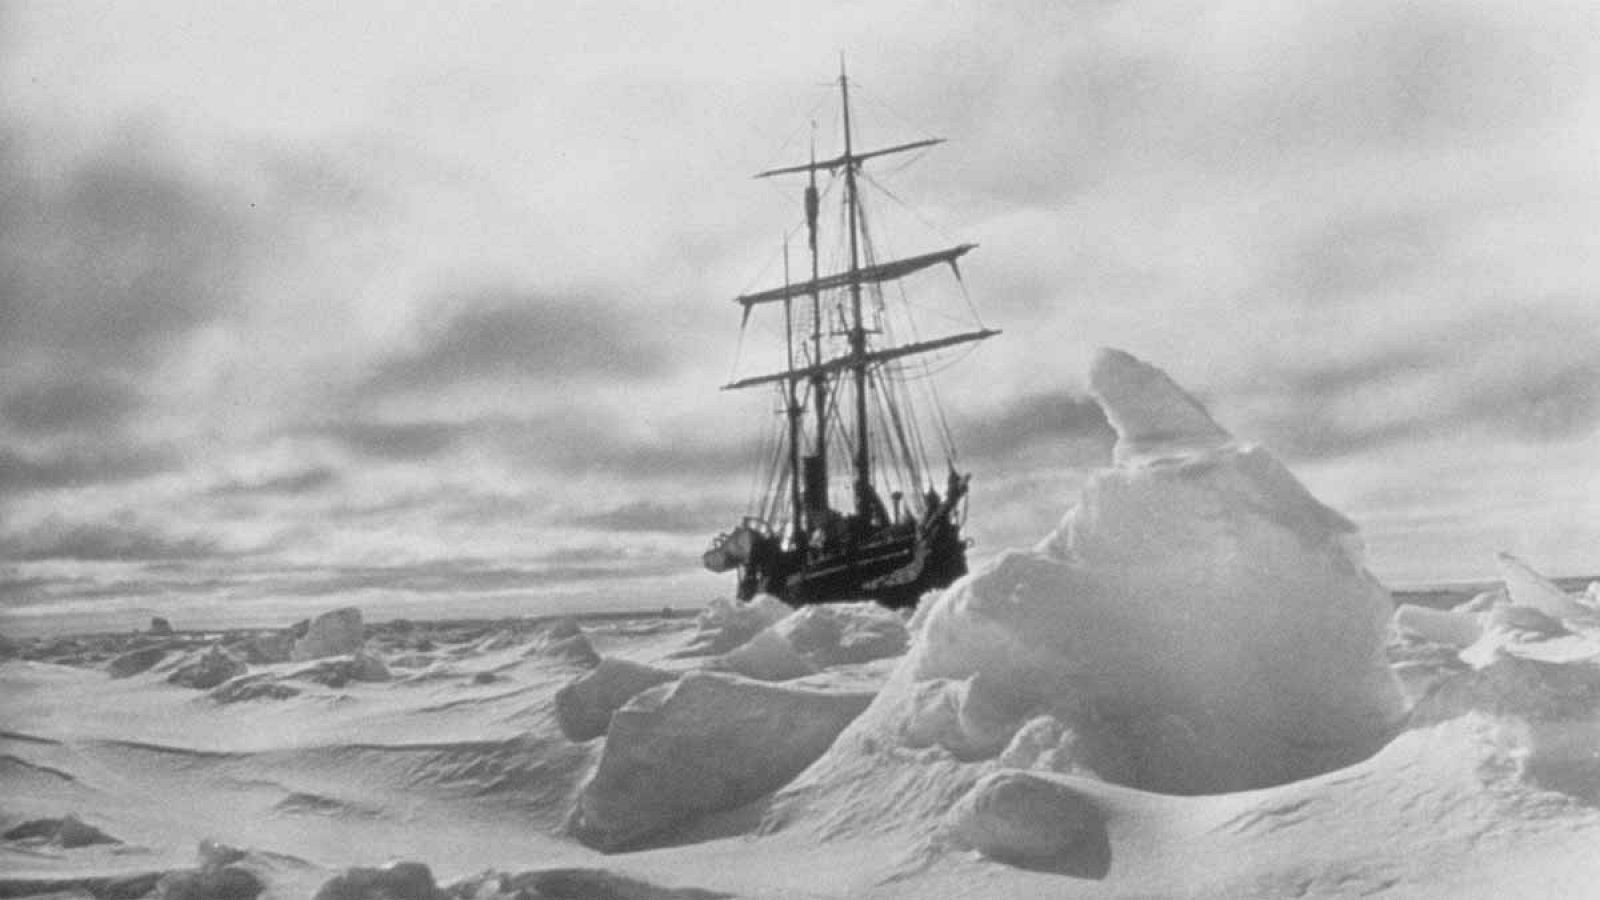 Imagen del Endurance de Ernest Shackleton aprisionado en el hielo antártico.